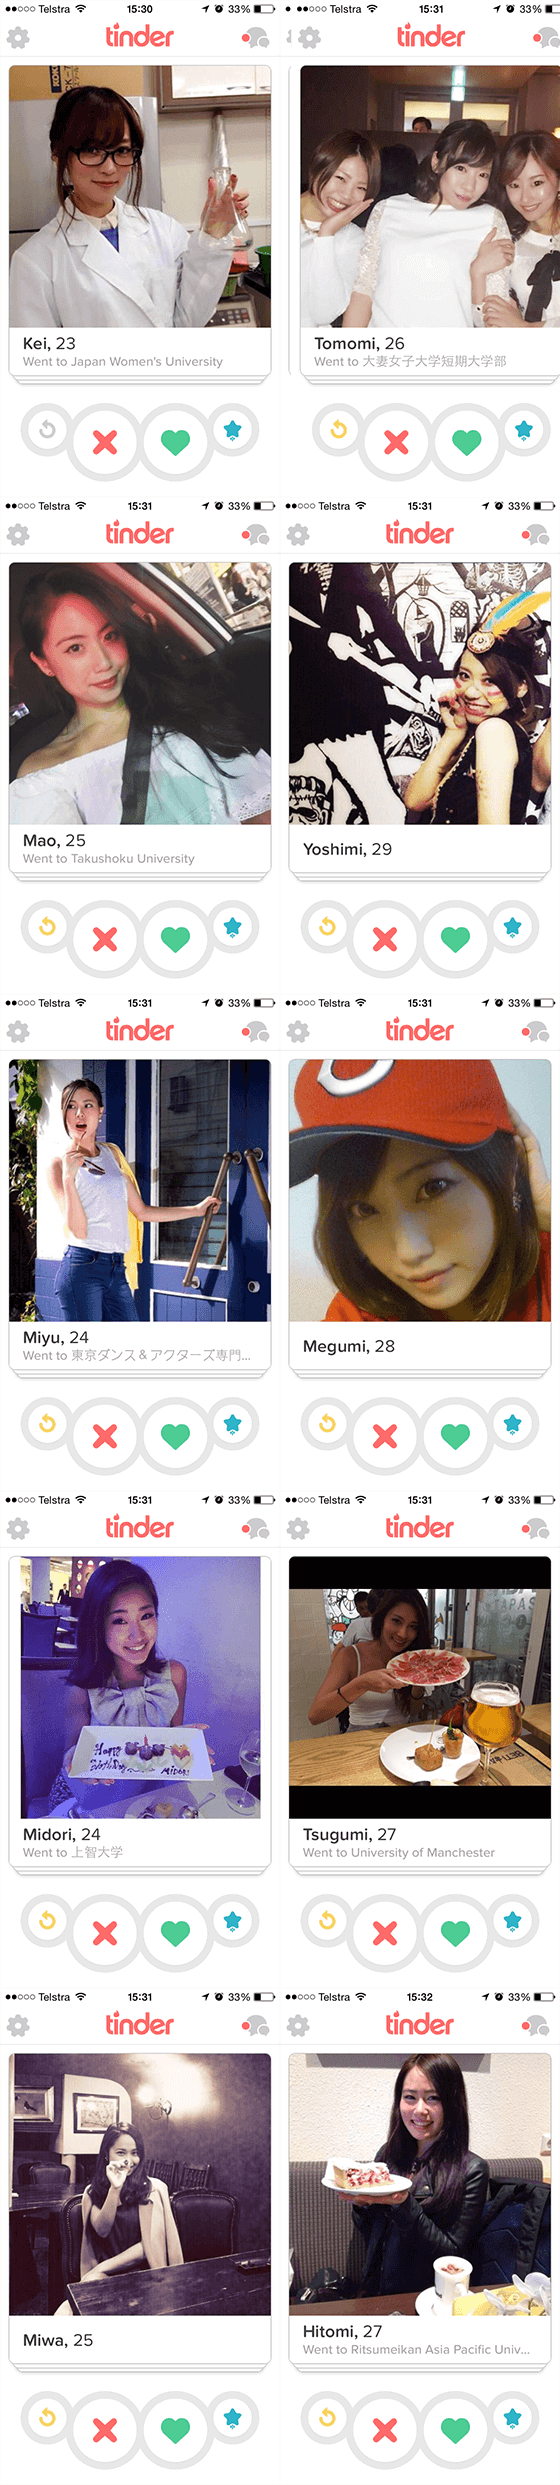 Hottest-Popular-Tinder-girls-in-Tokyo-Japan